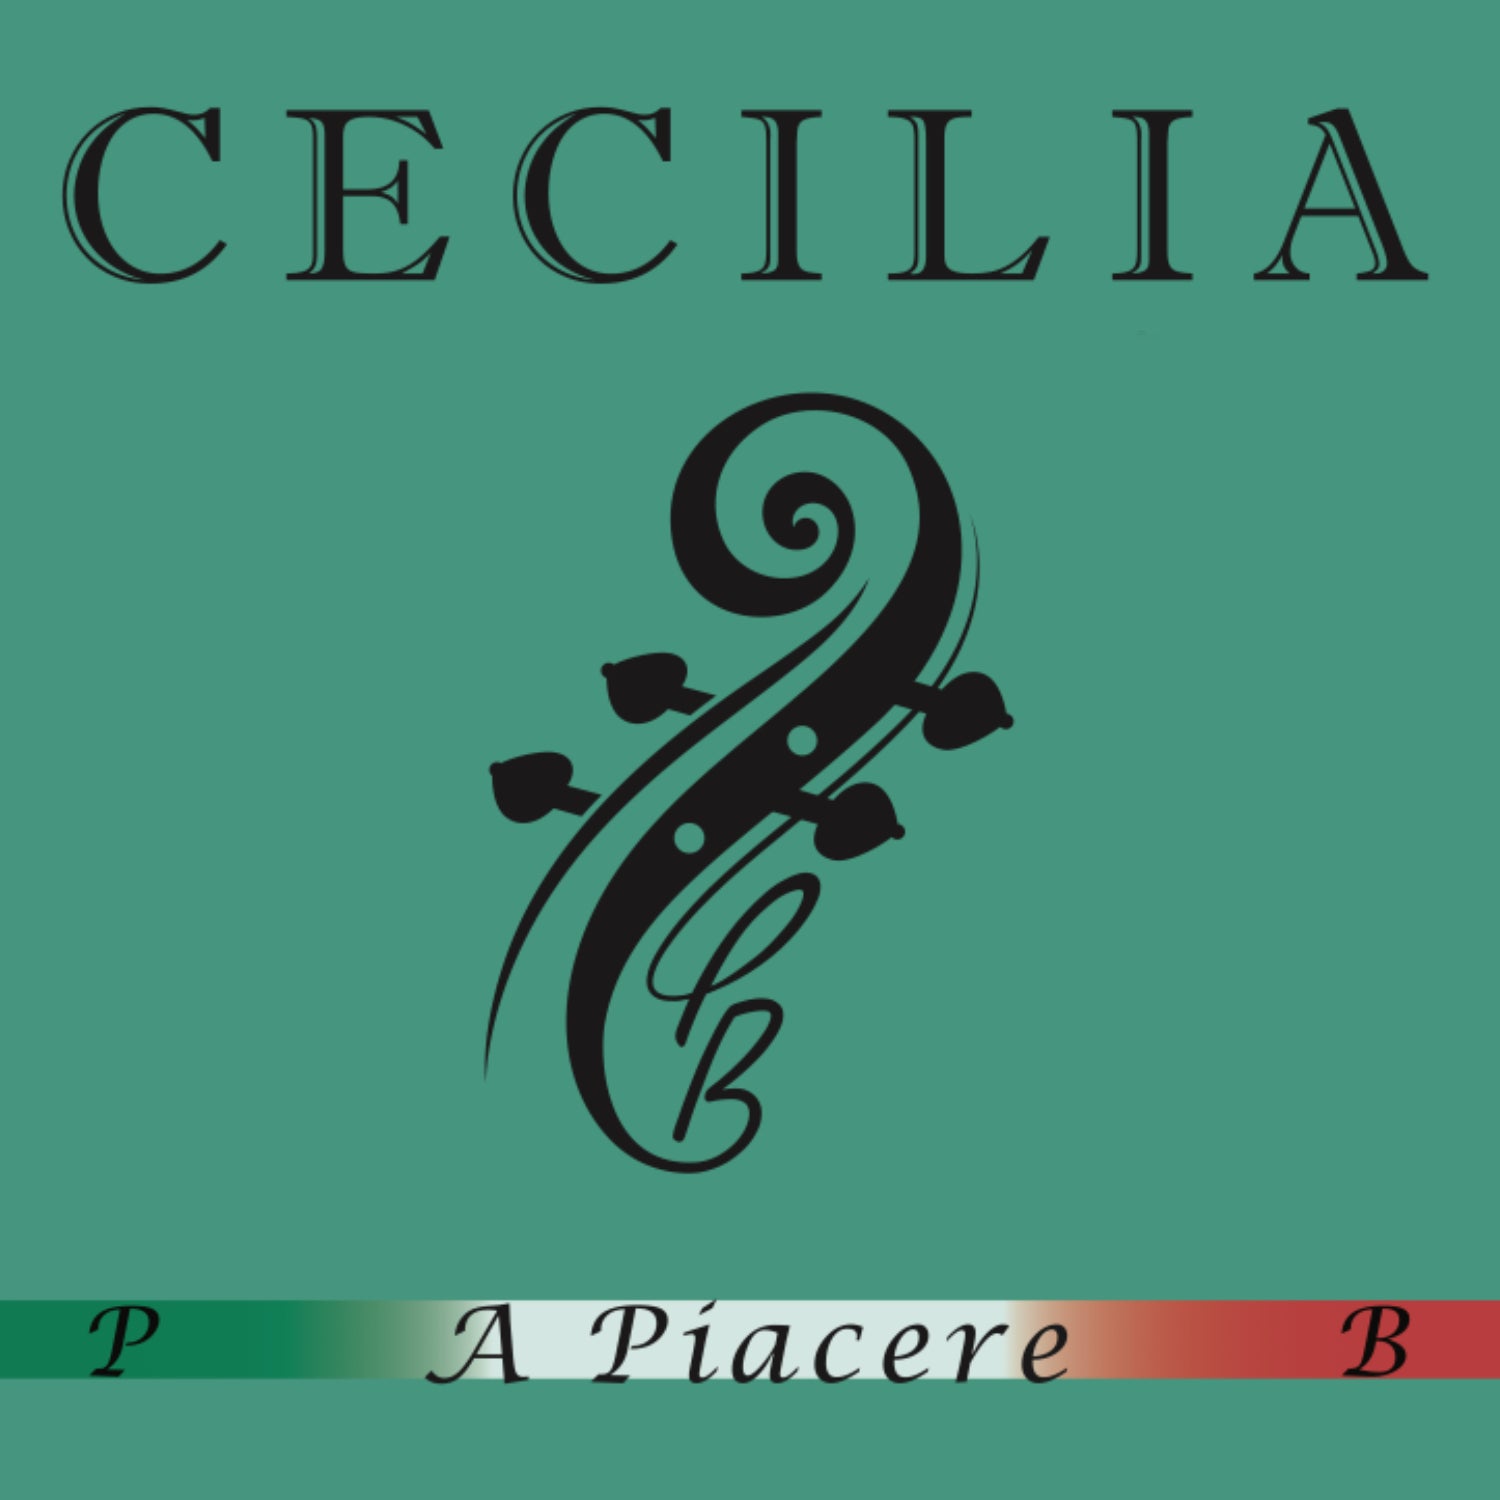 CECILIA A. Piacere Cello